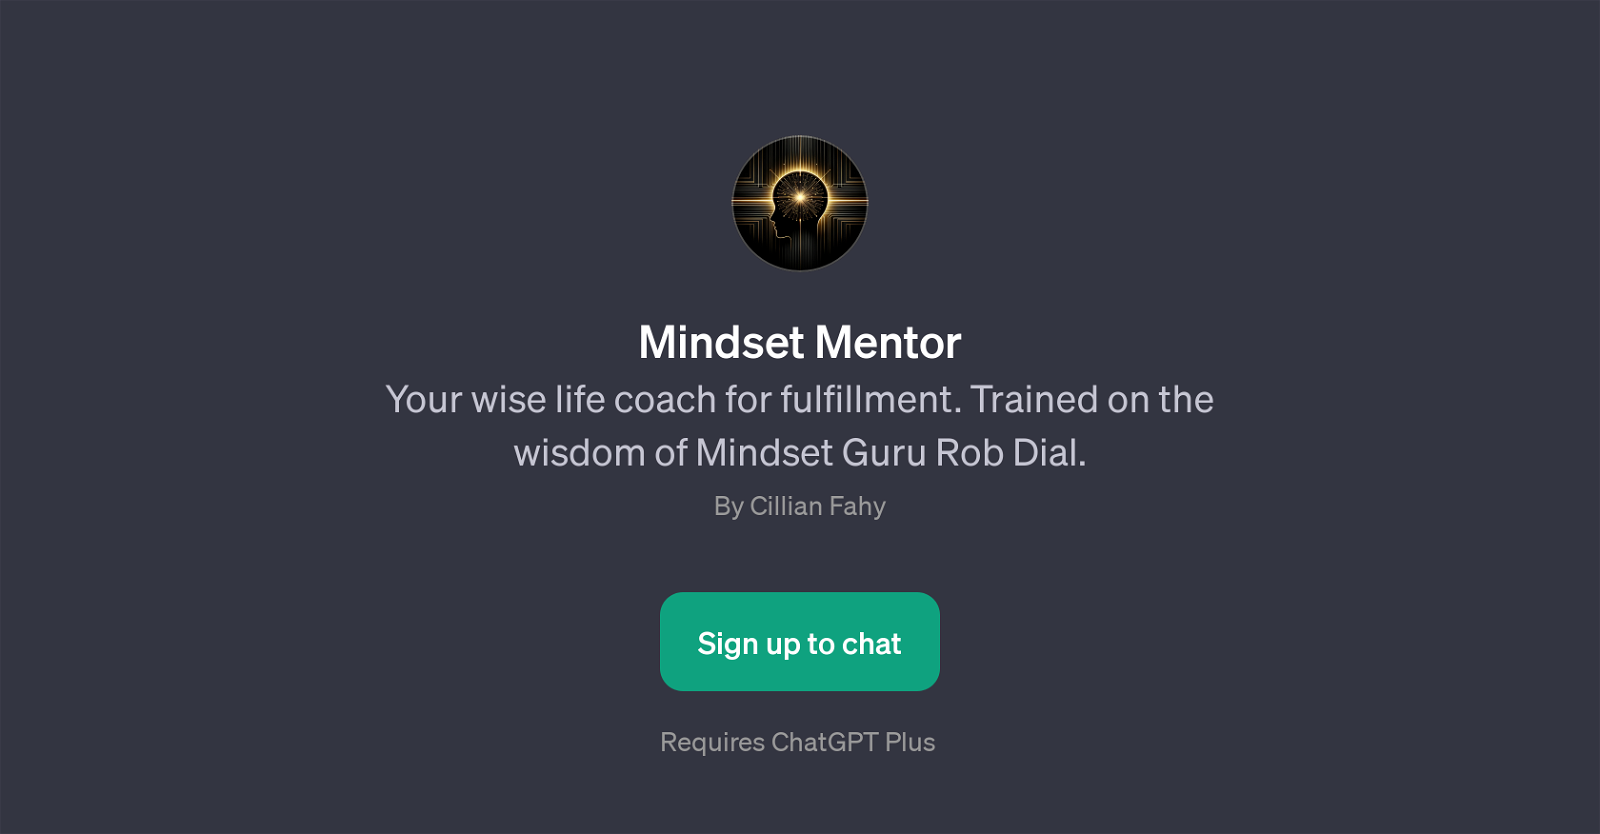 Mindset Mentor website